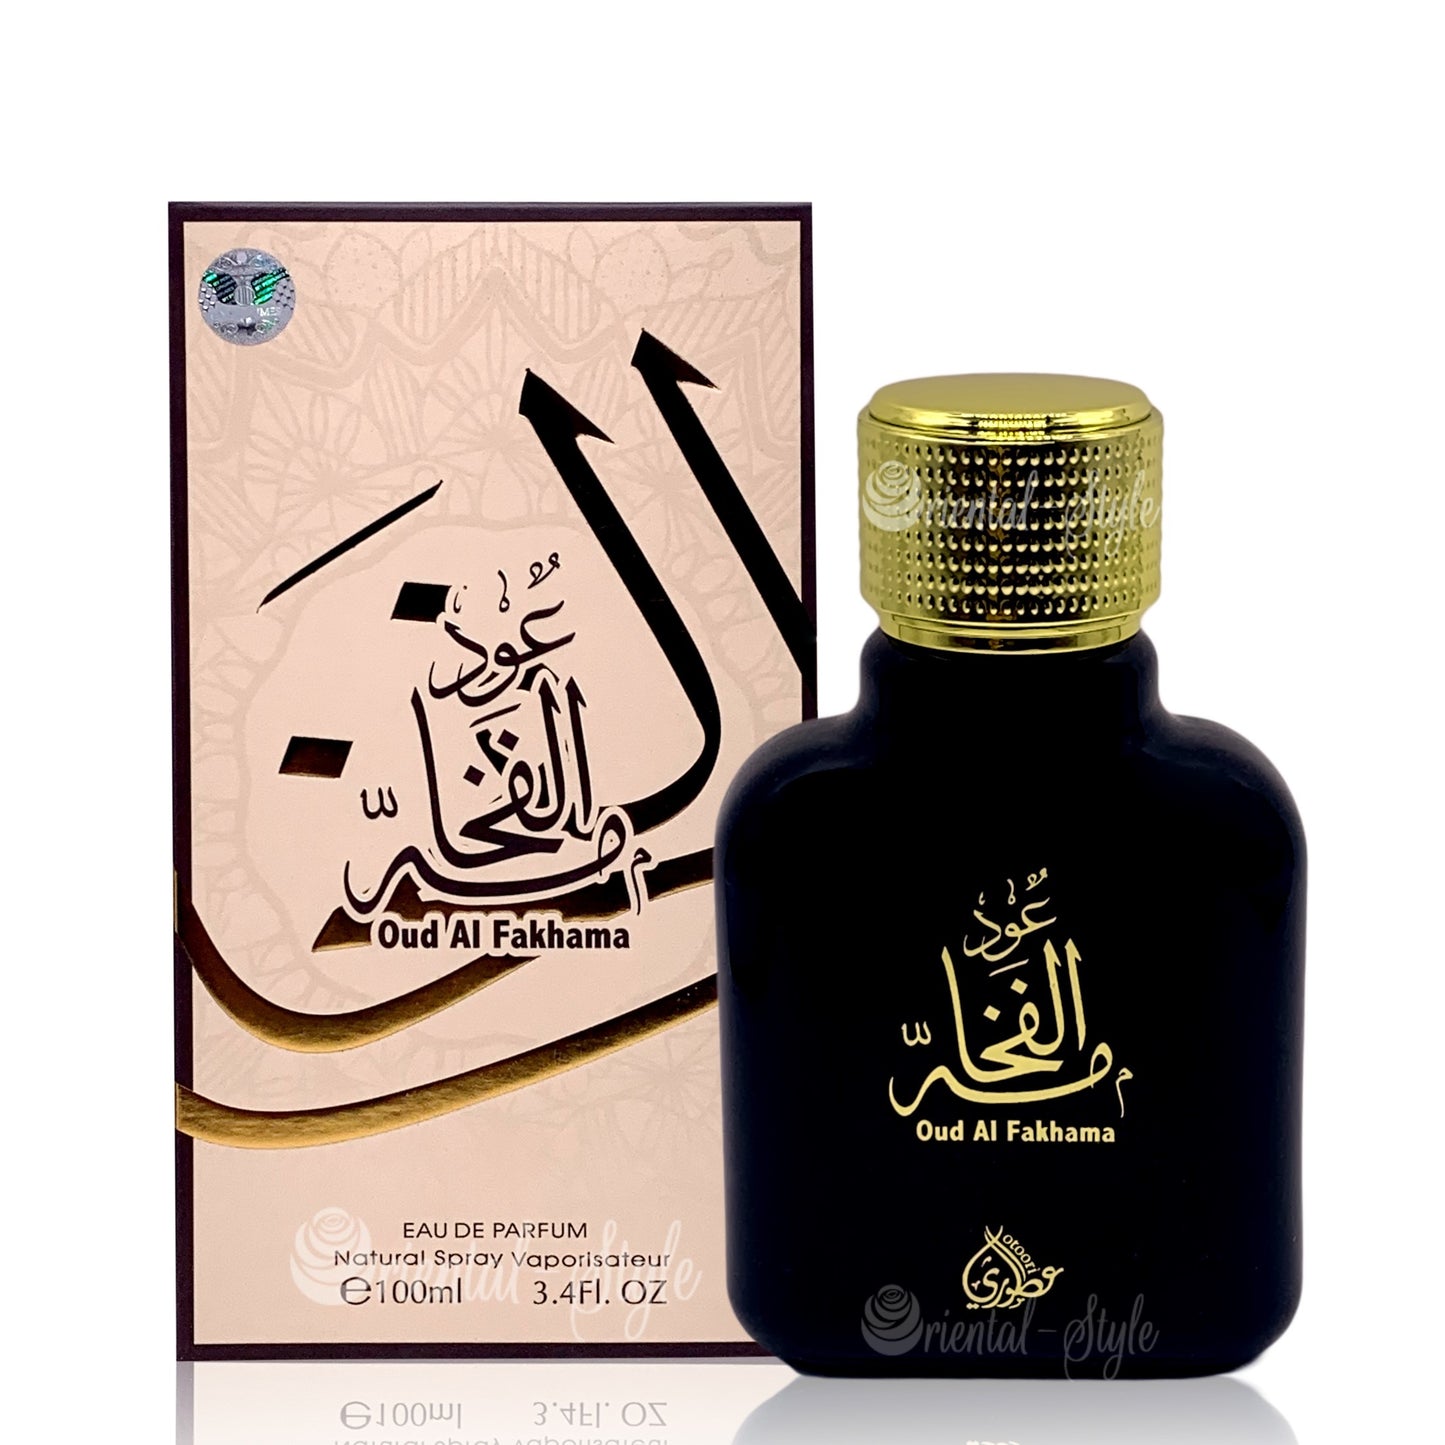 100 ml Eau de Perfume Oud Al Fakhama - Raikas, Hedelmäinen ja Sitruksinen Tuoksu Miheille ja Naisille